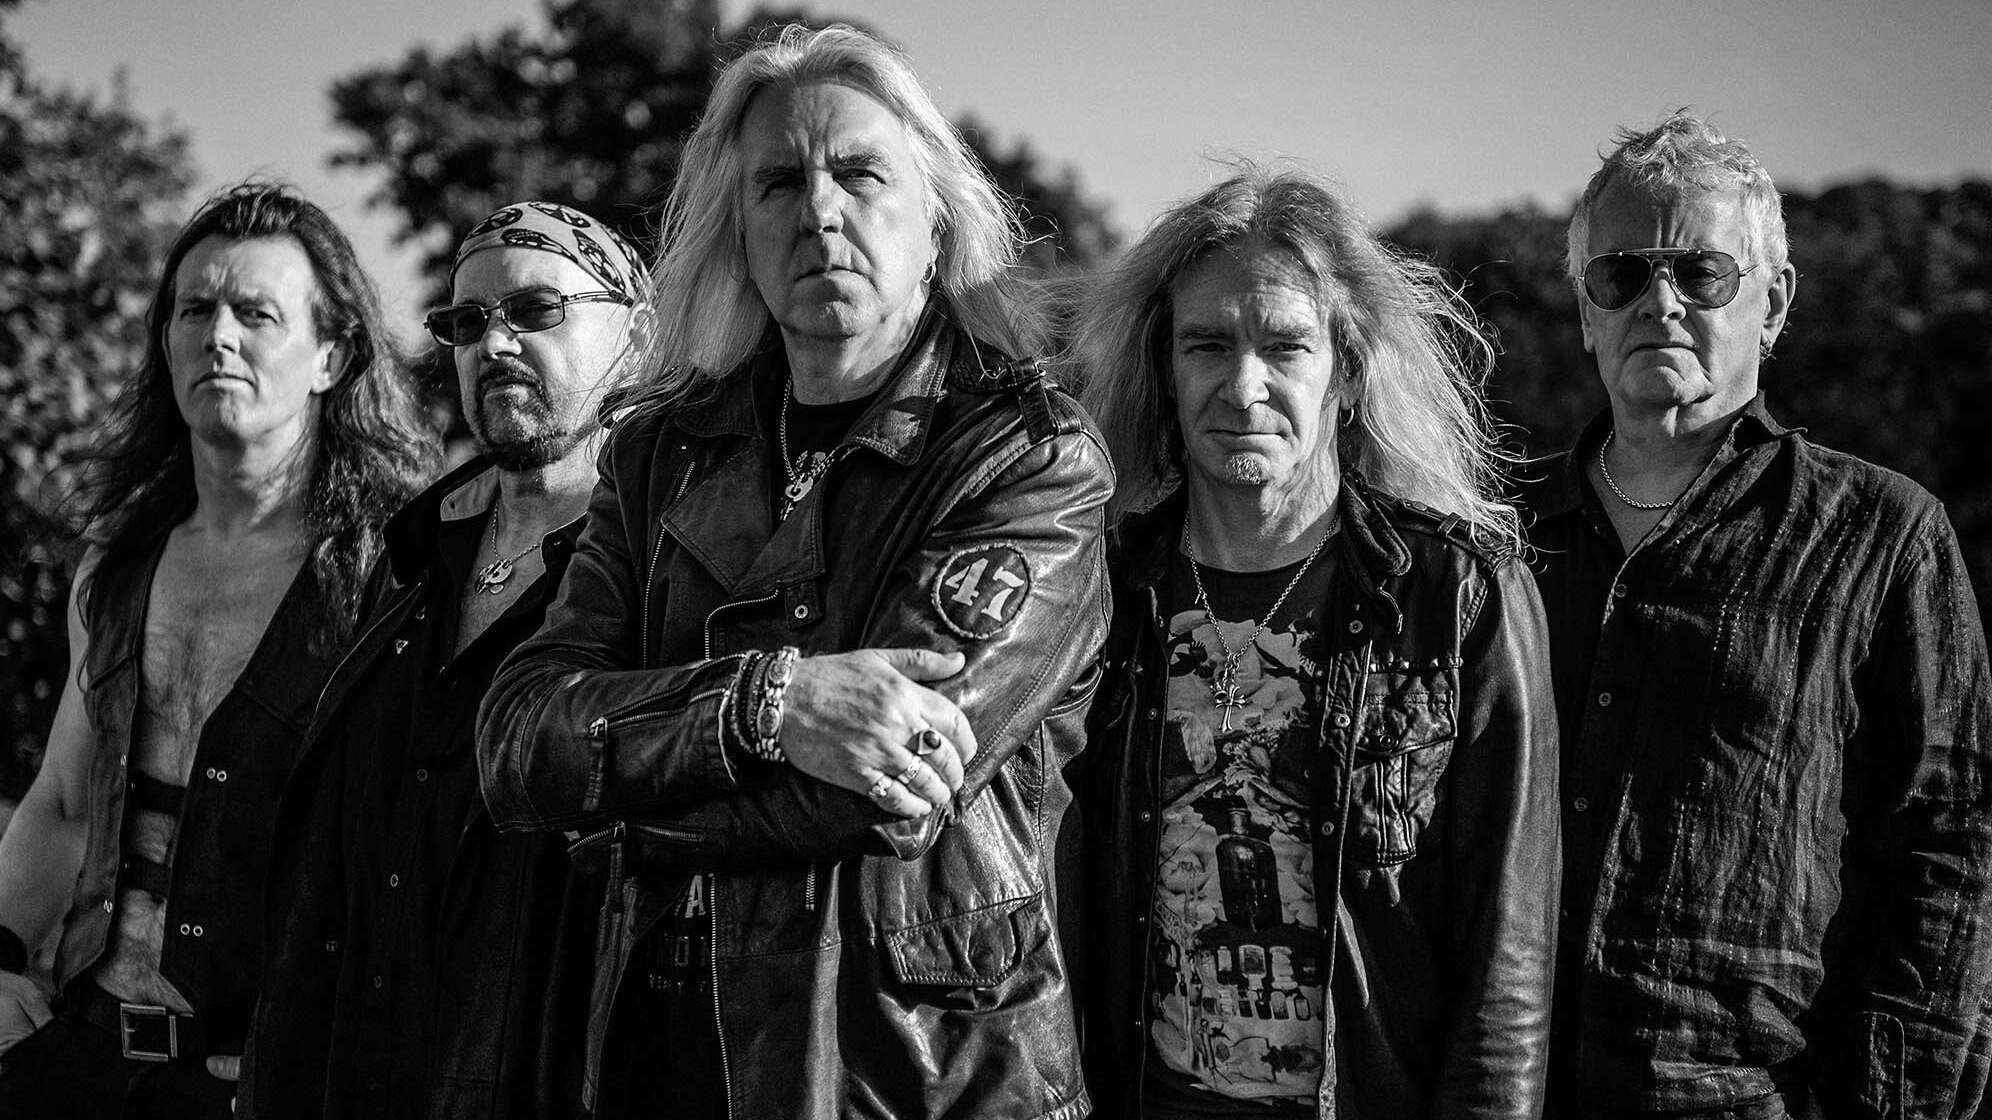 Ein offizielles Bandfoto der britischen Heavy Metal-Band Saxon in schwarz-weiß